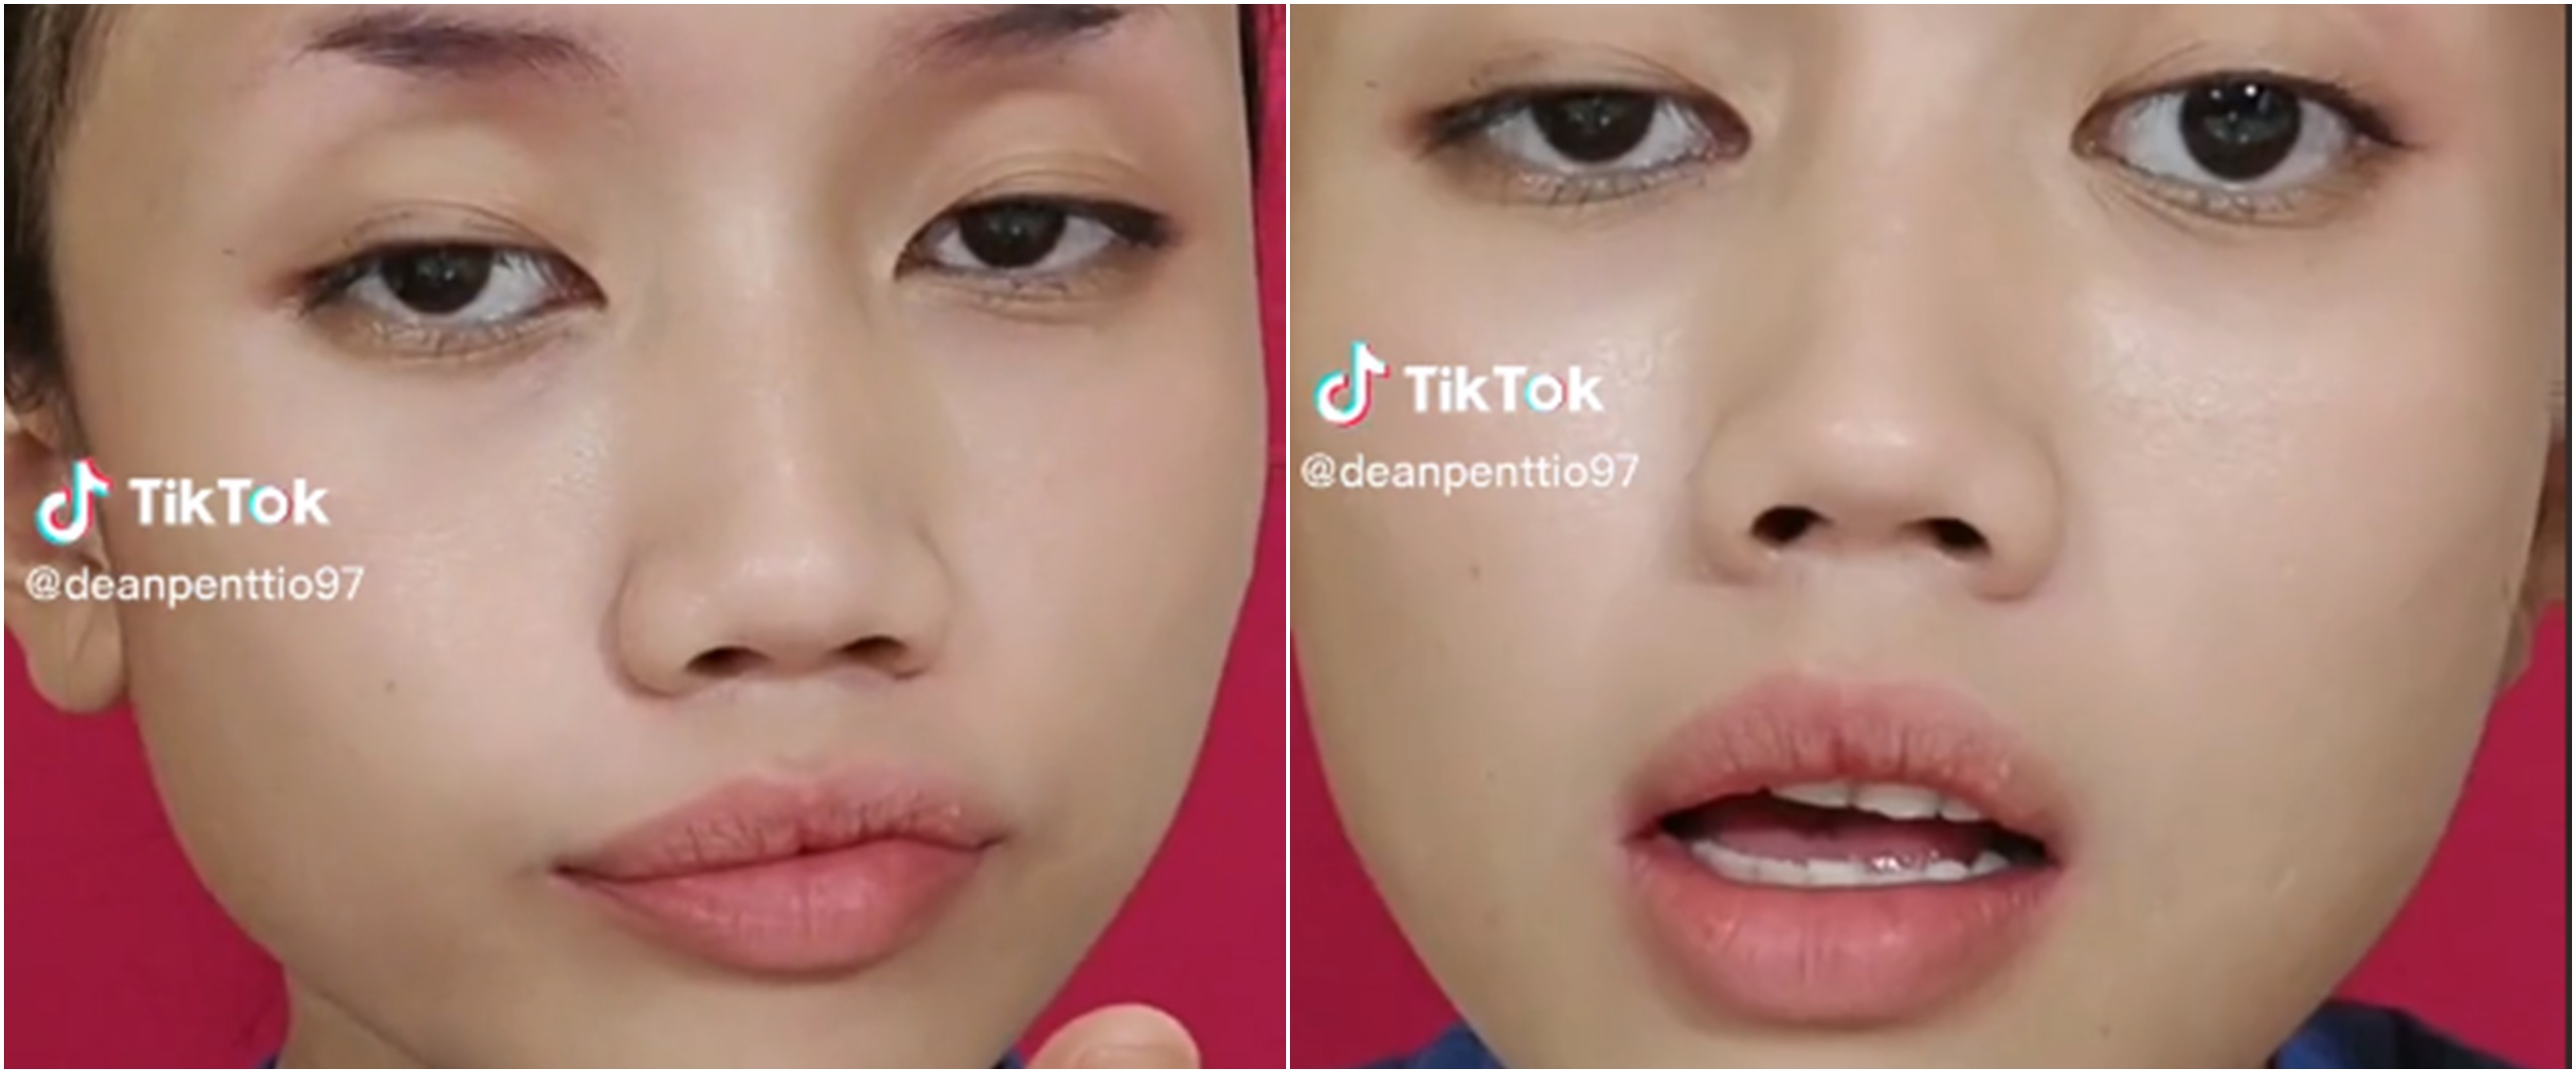 Viral wanita bikin tutorial makeup melabrak pelakor, cara gambar alisnya bikin salah fokus